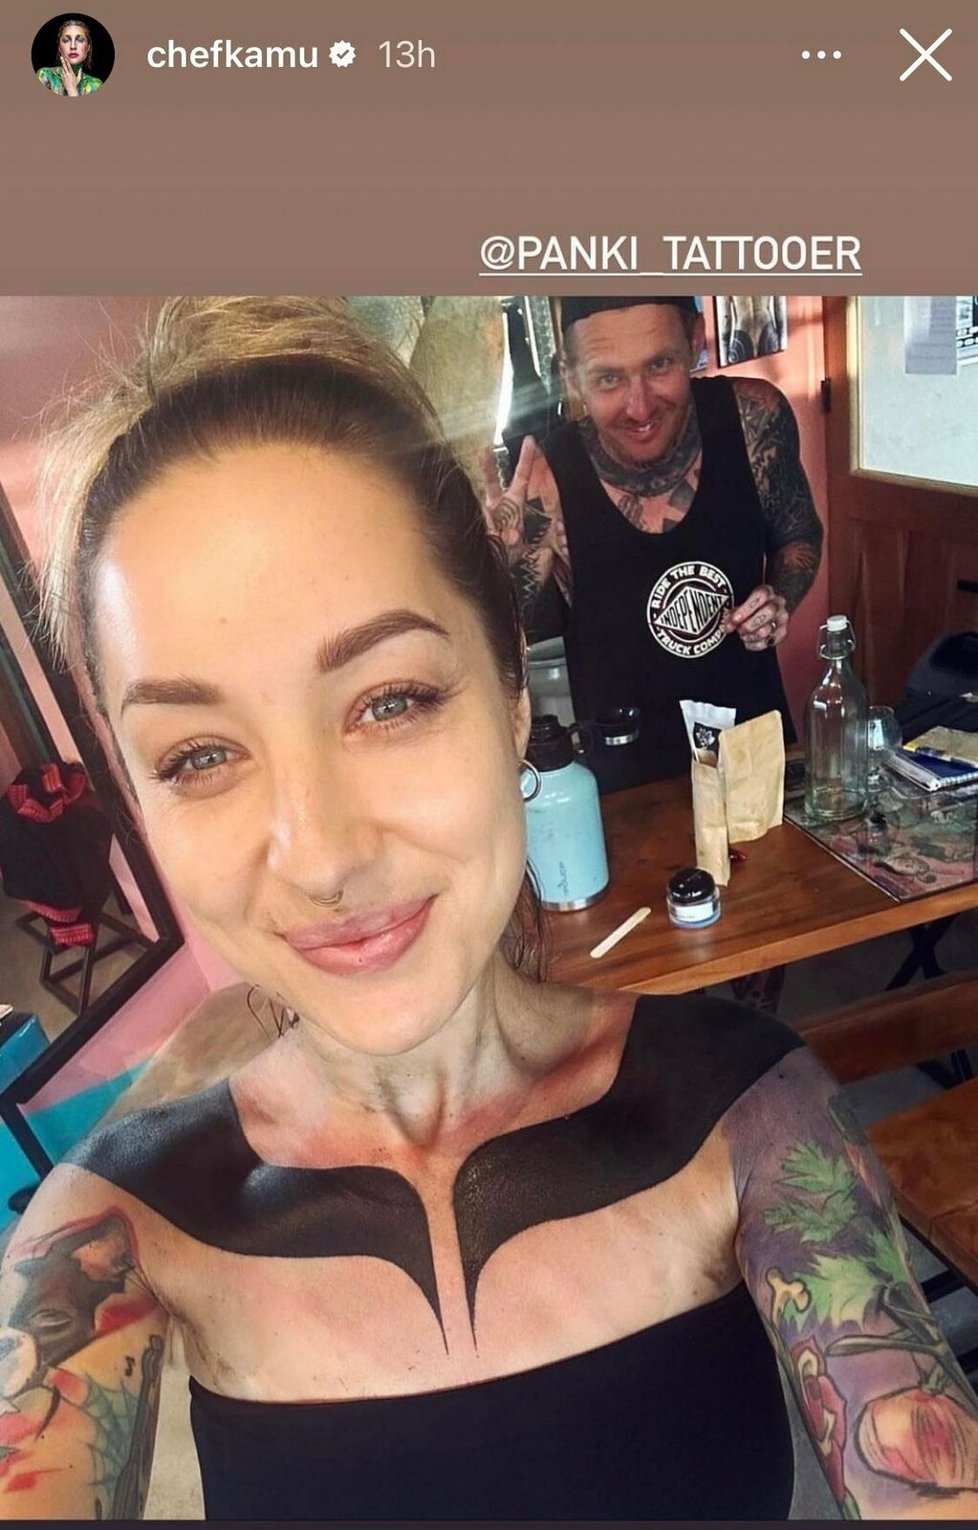 Kamu a její tetování